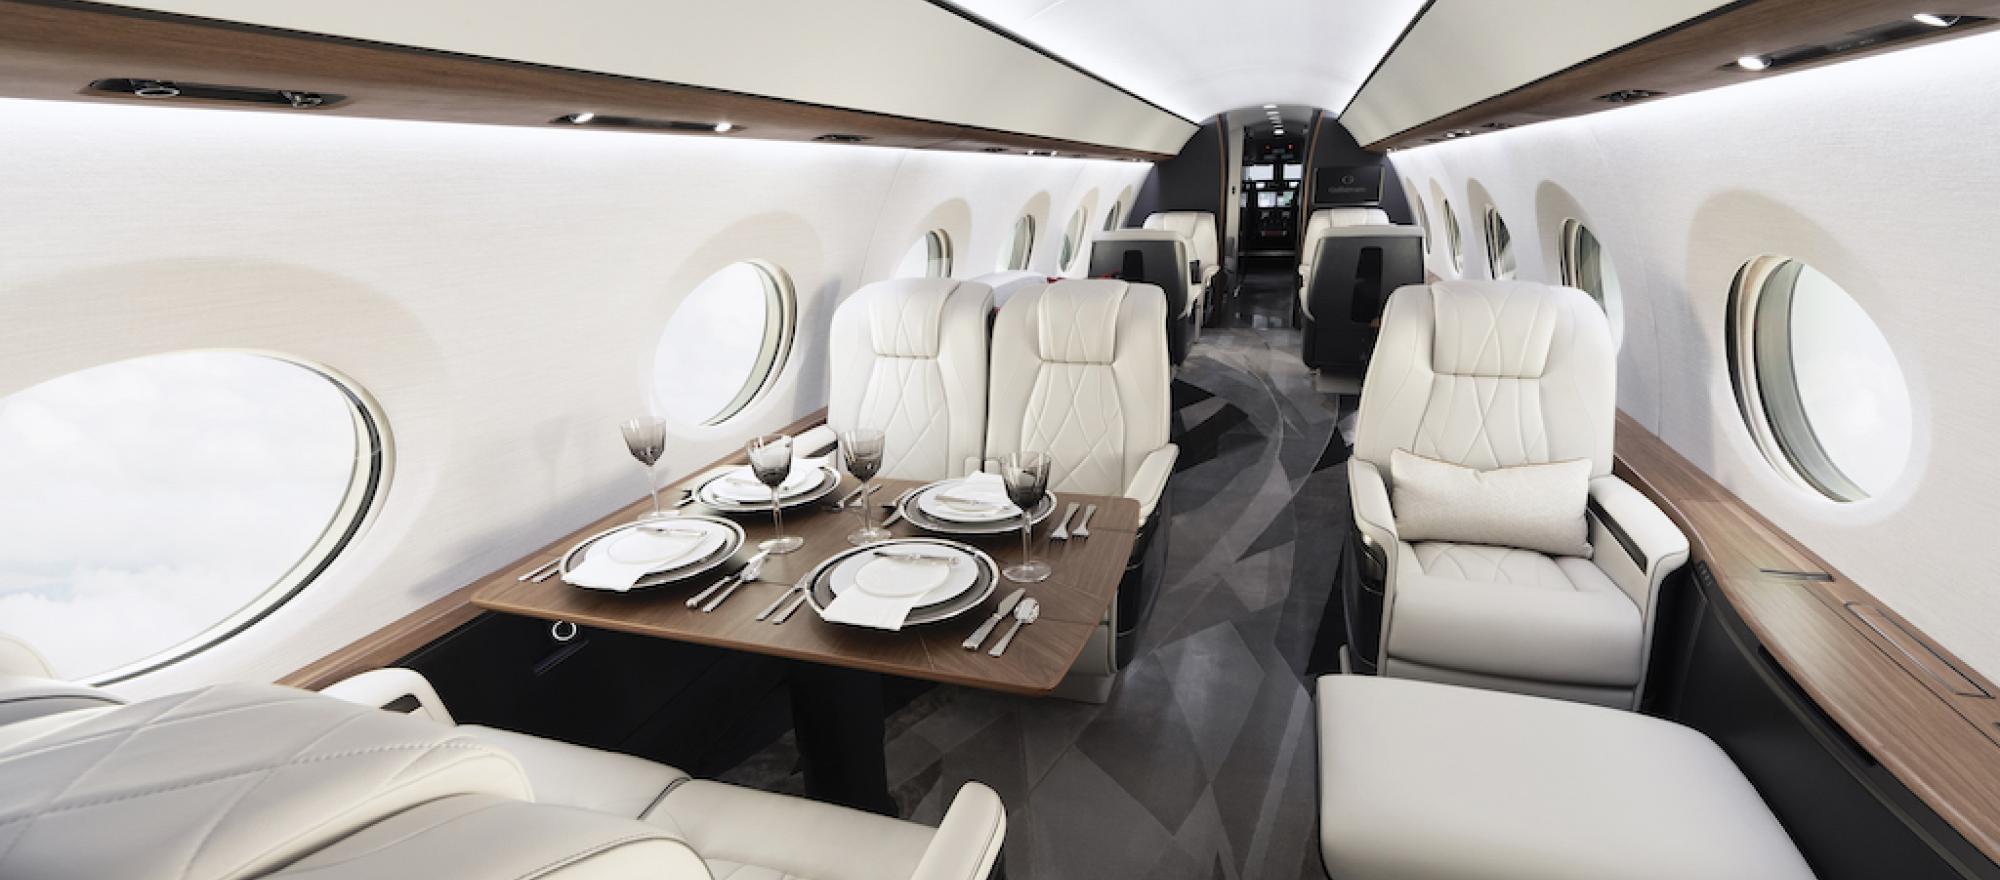 Gulfstream G700 interior (Photo: Gulfstream Aerospace)